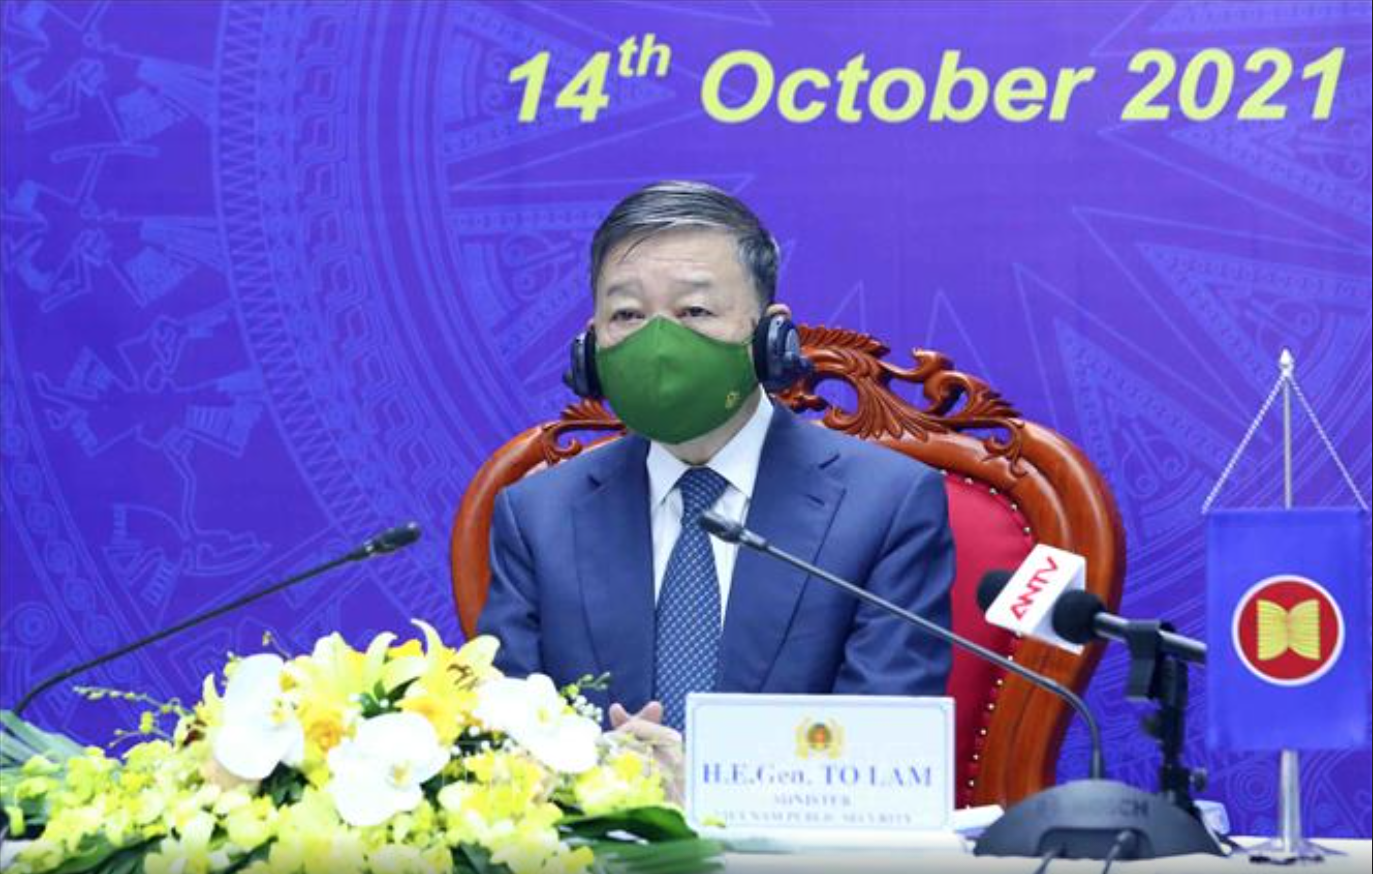 Bộ trưởng Bộ Công an Tô Lâm: “Việt Nam không khoan nhượng với ma túy” - Ảnh 1.